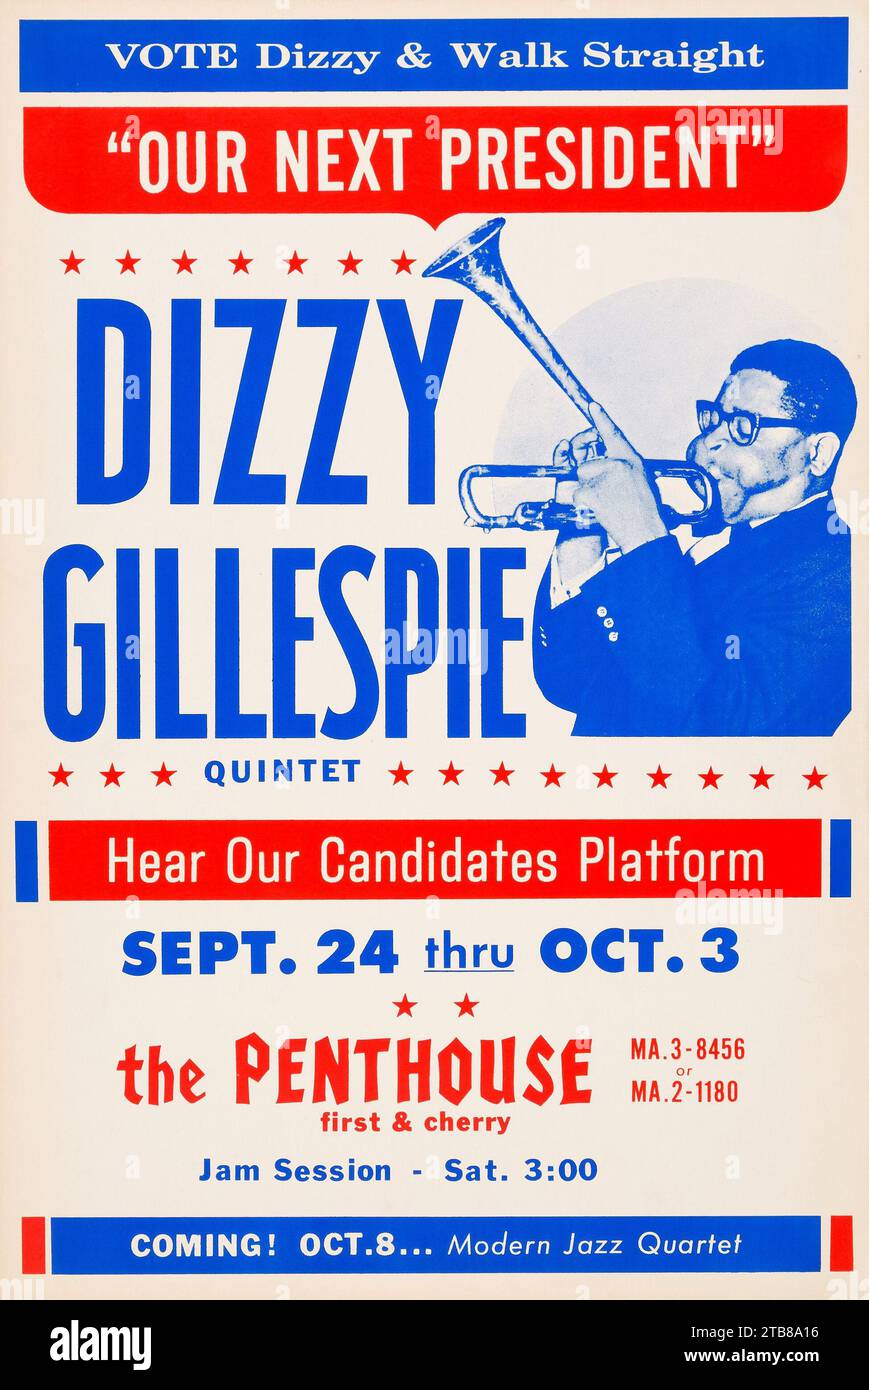 Affiche de jazz vintage - notre prochain président - vote Dizzy Gillespie Penthouse concert Poster (vers 1964) Banque D'Images